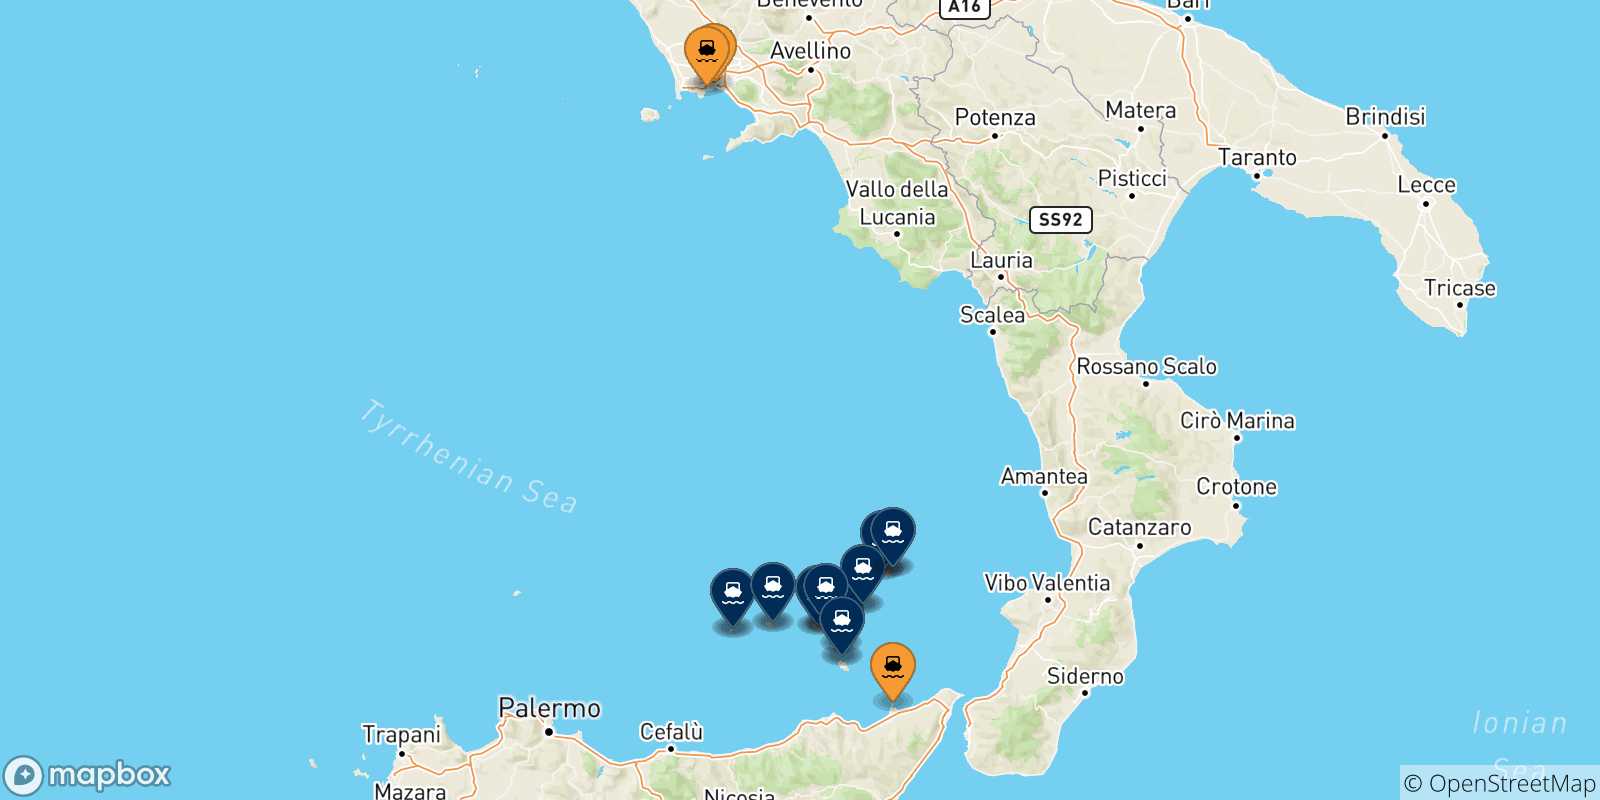 Mappa delle possibili rotte tra l'Italia e le Isole Eolie